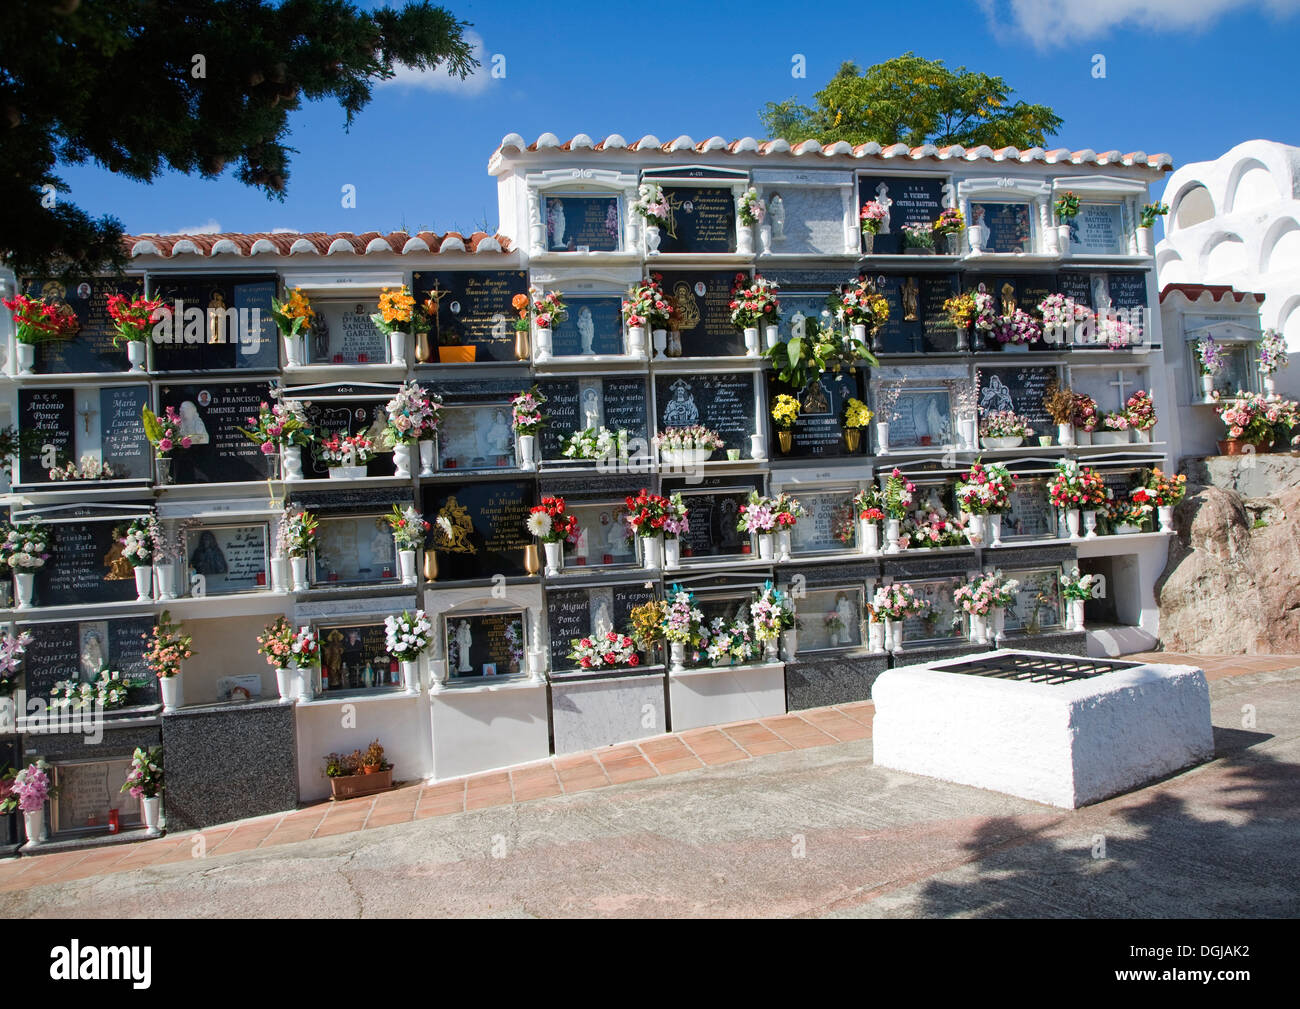 Friedhof, dekoriert mit Blumen Comares, Provinz Malaga, Spanien Stockfoto